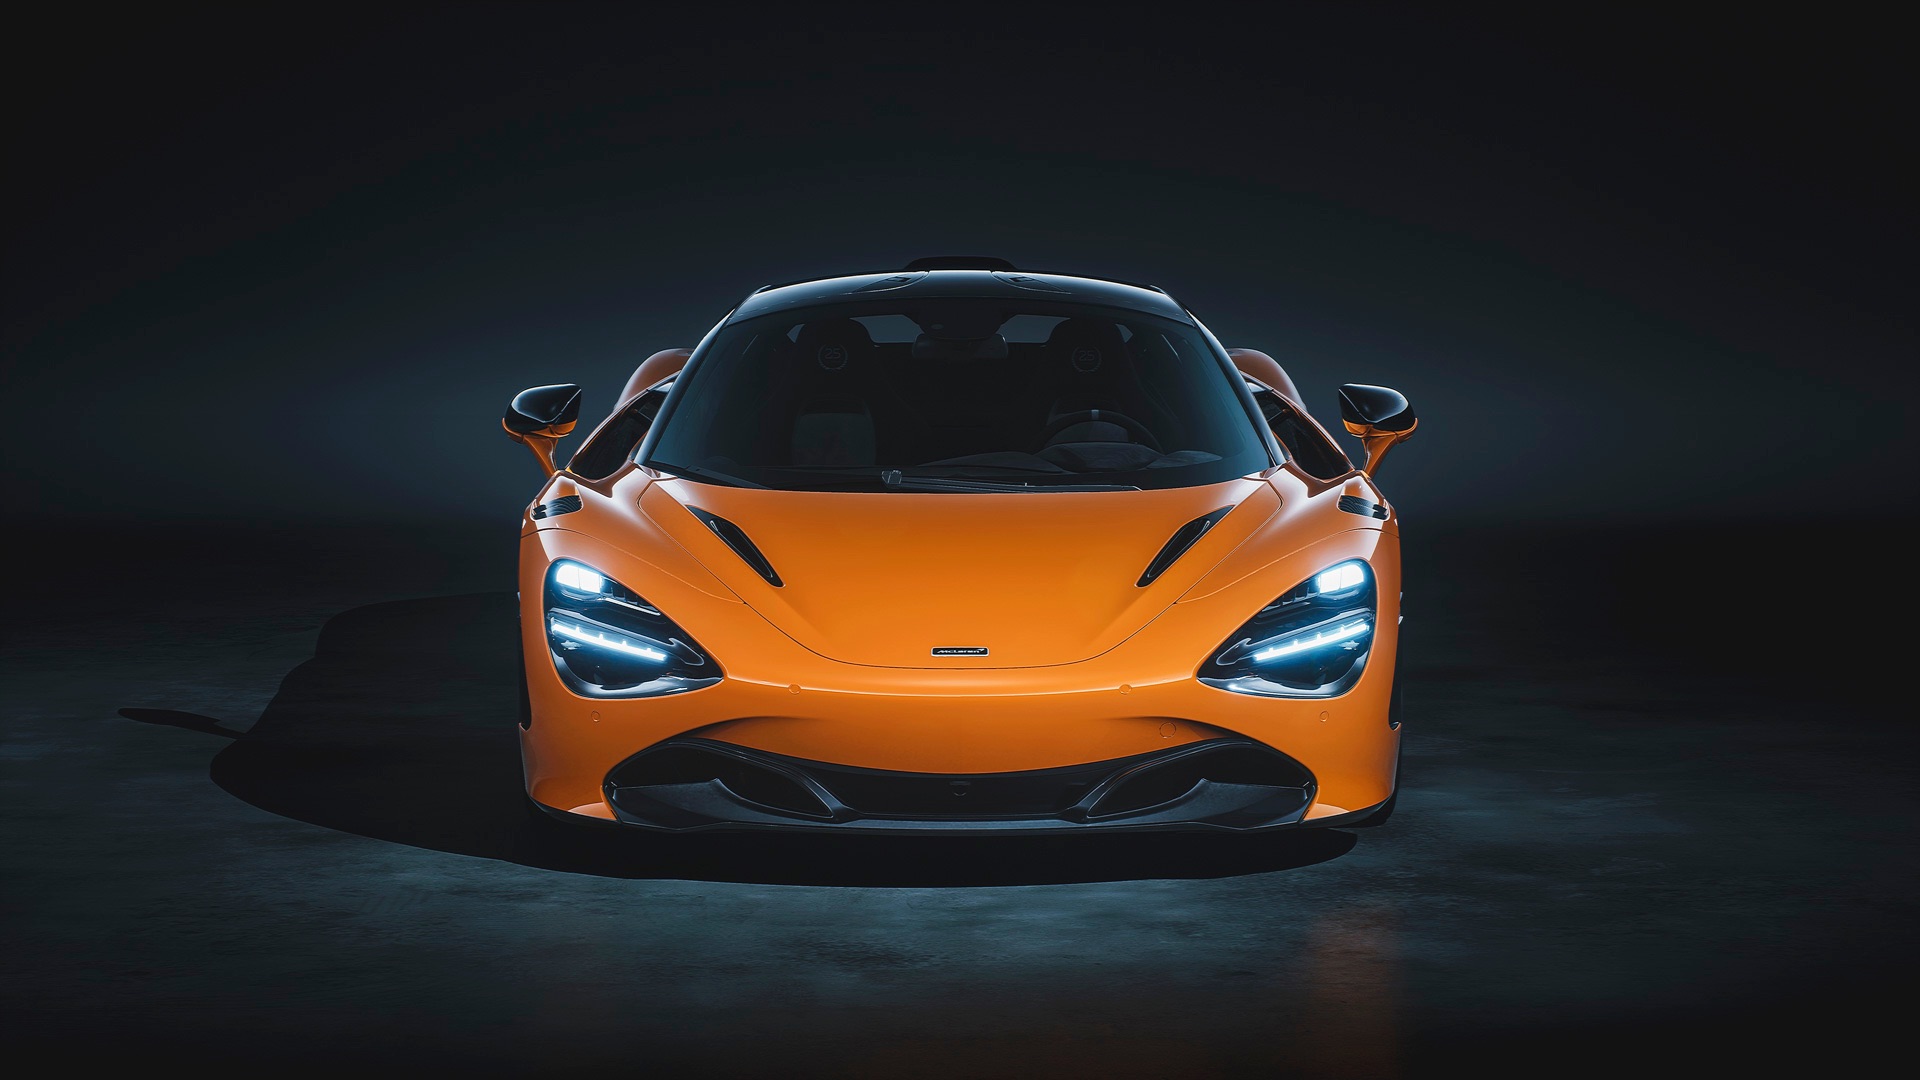 Наиболее важным вариантом является окраска. McLaren предлагает 720S Le Mans либо в цвете McLaren Orange, либо Sarthe Grey с оранжевым и серым салоном соответственно. Оба являются знаковыми ливреями McLaren, нижняя часть сделана в цвете «Ueno Grey», к